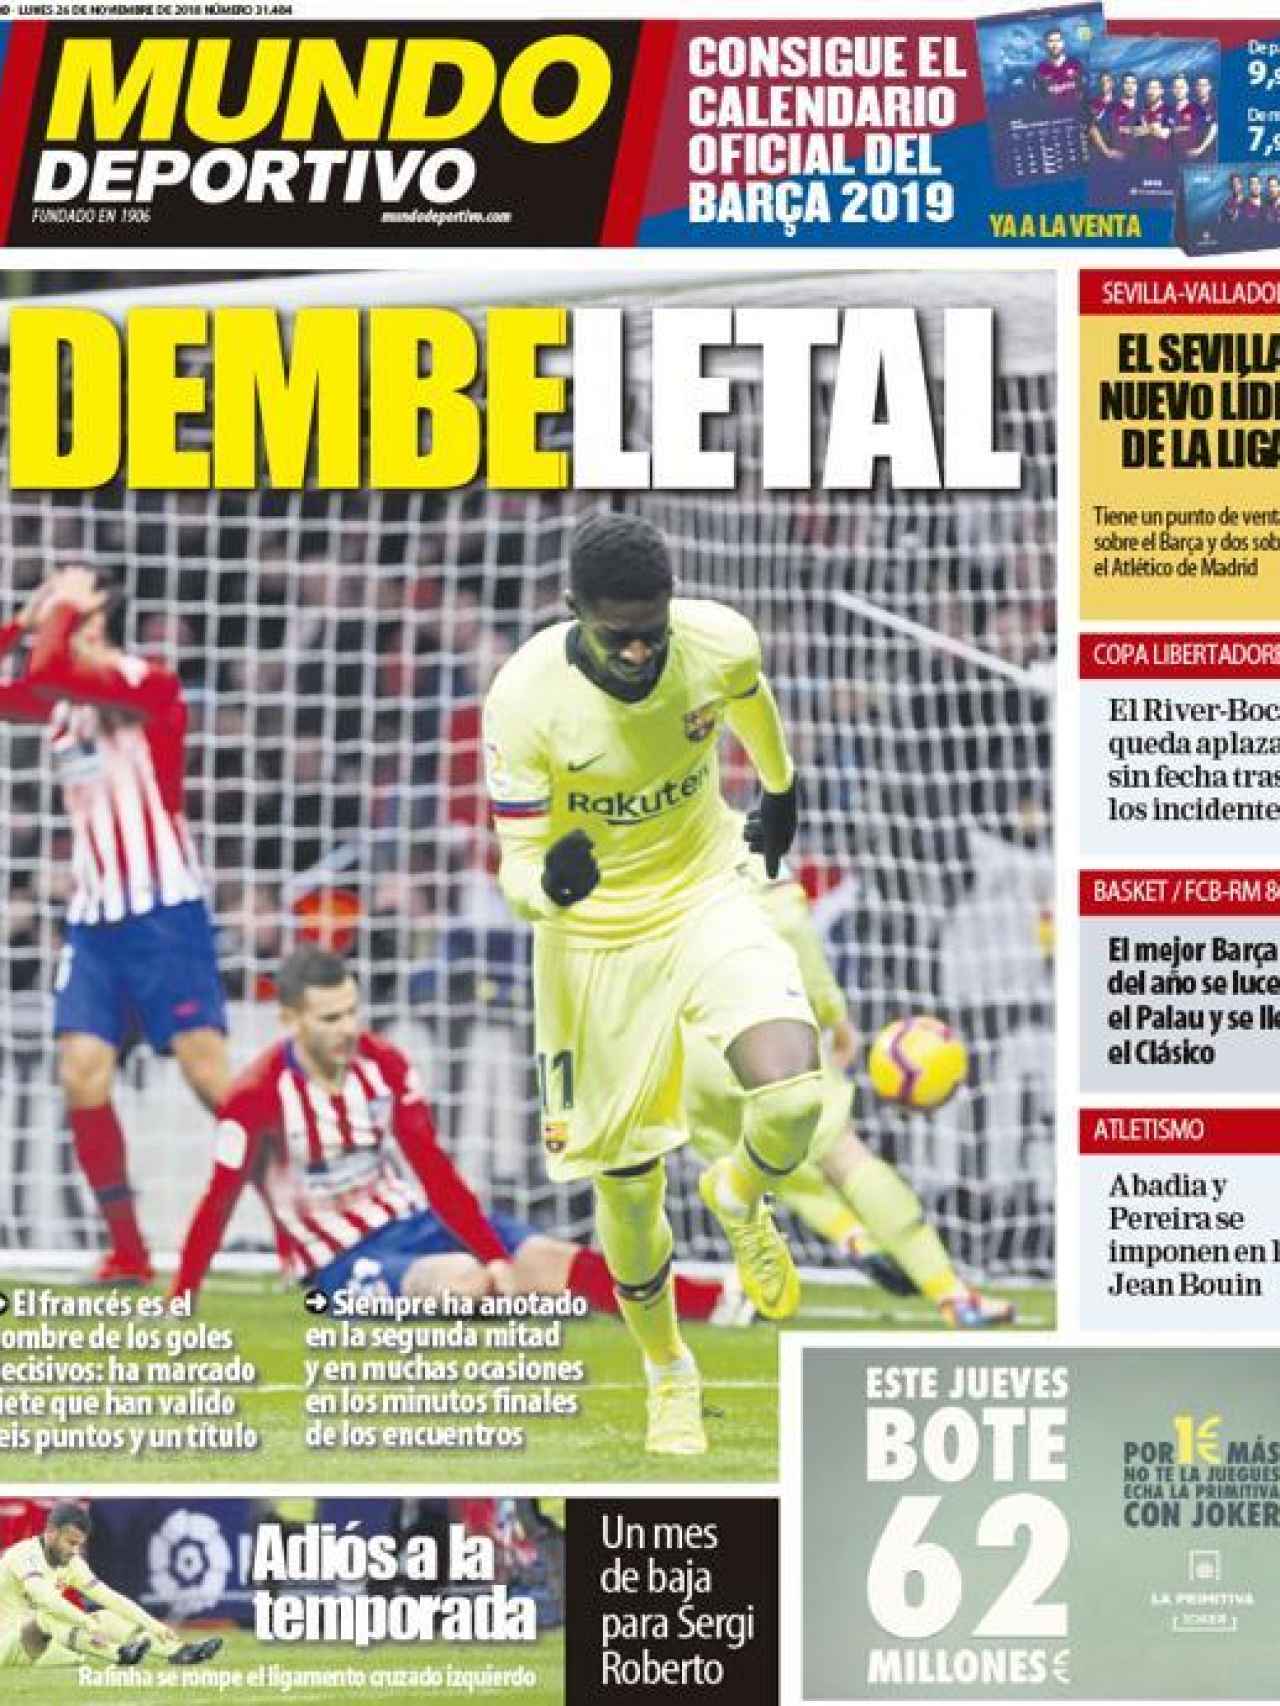 La portada del diario Mundo Deportivo (26/11/2018)